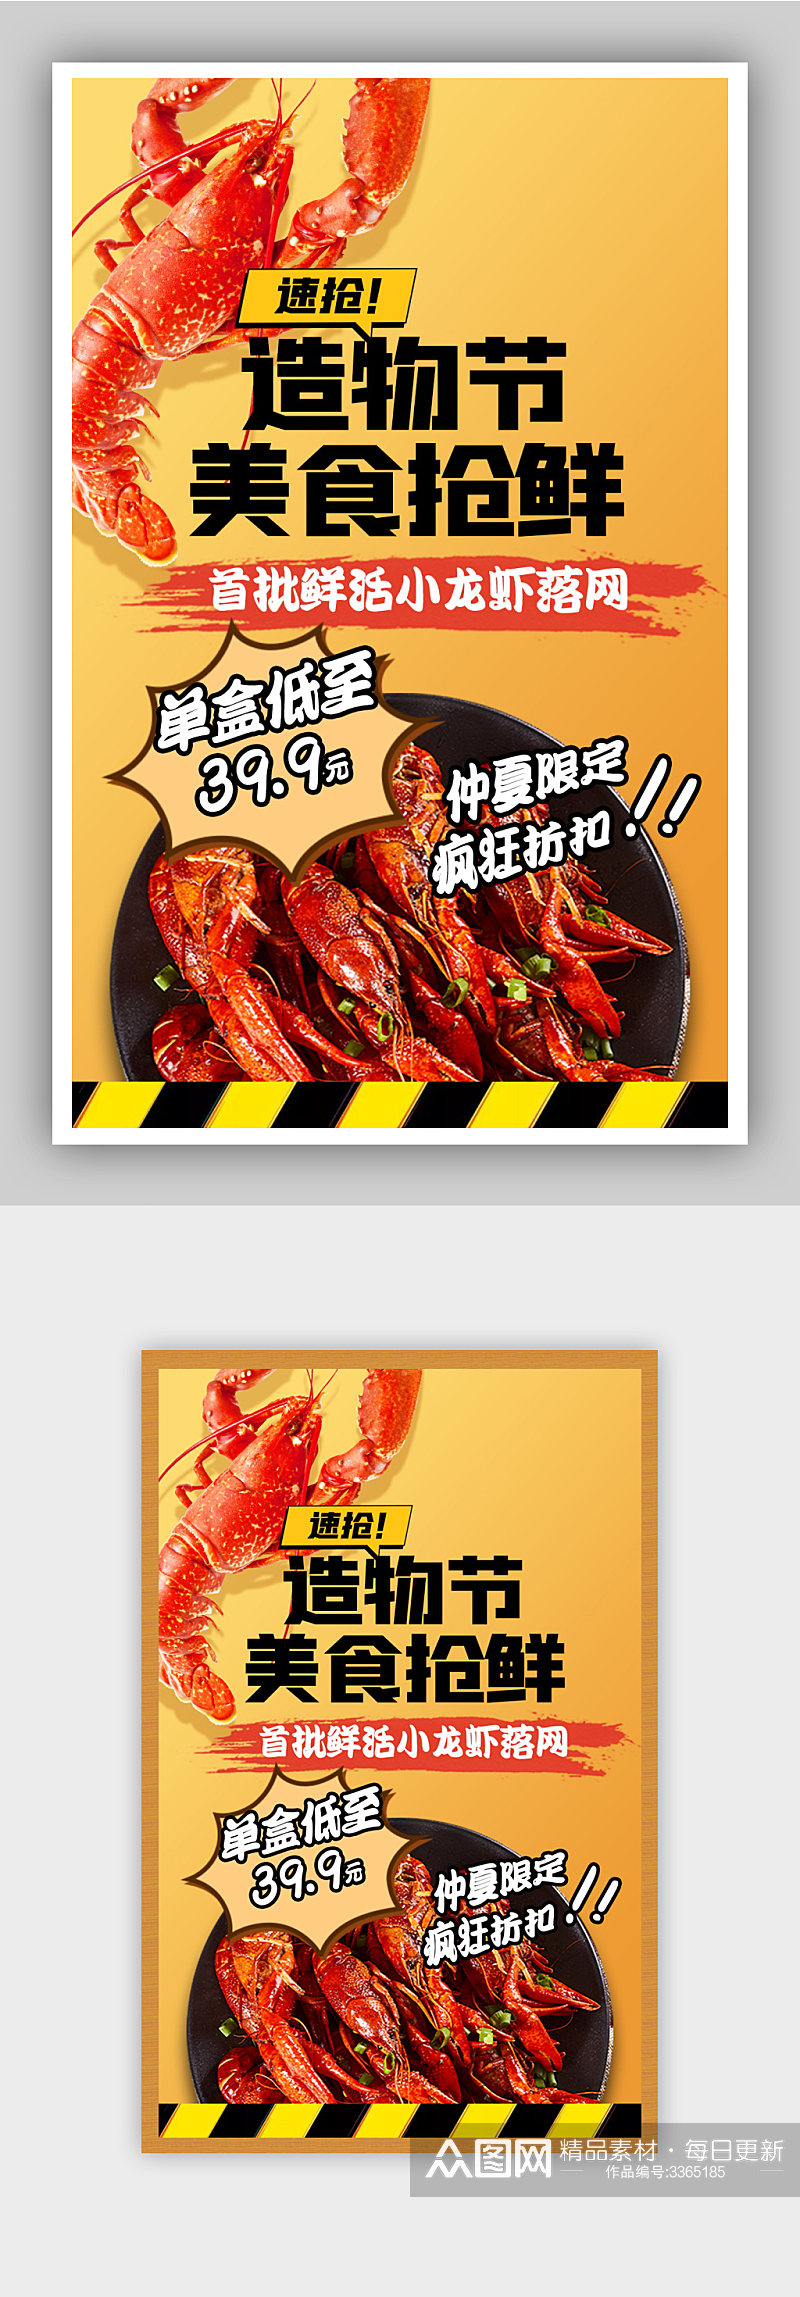 创意美食上新小龙虾造物节抢鲜季促销海报素材